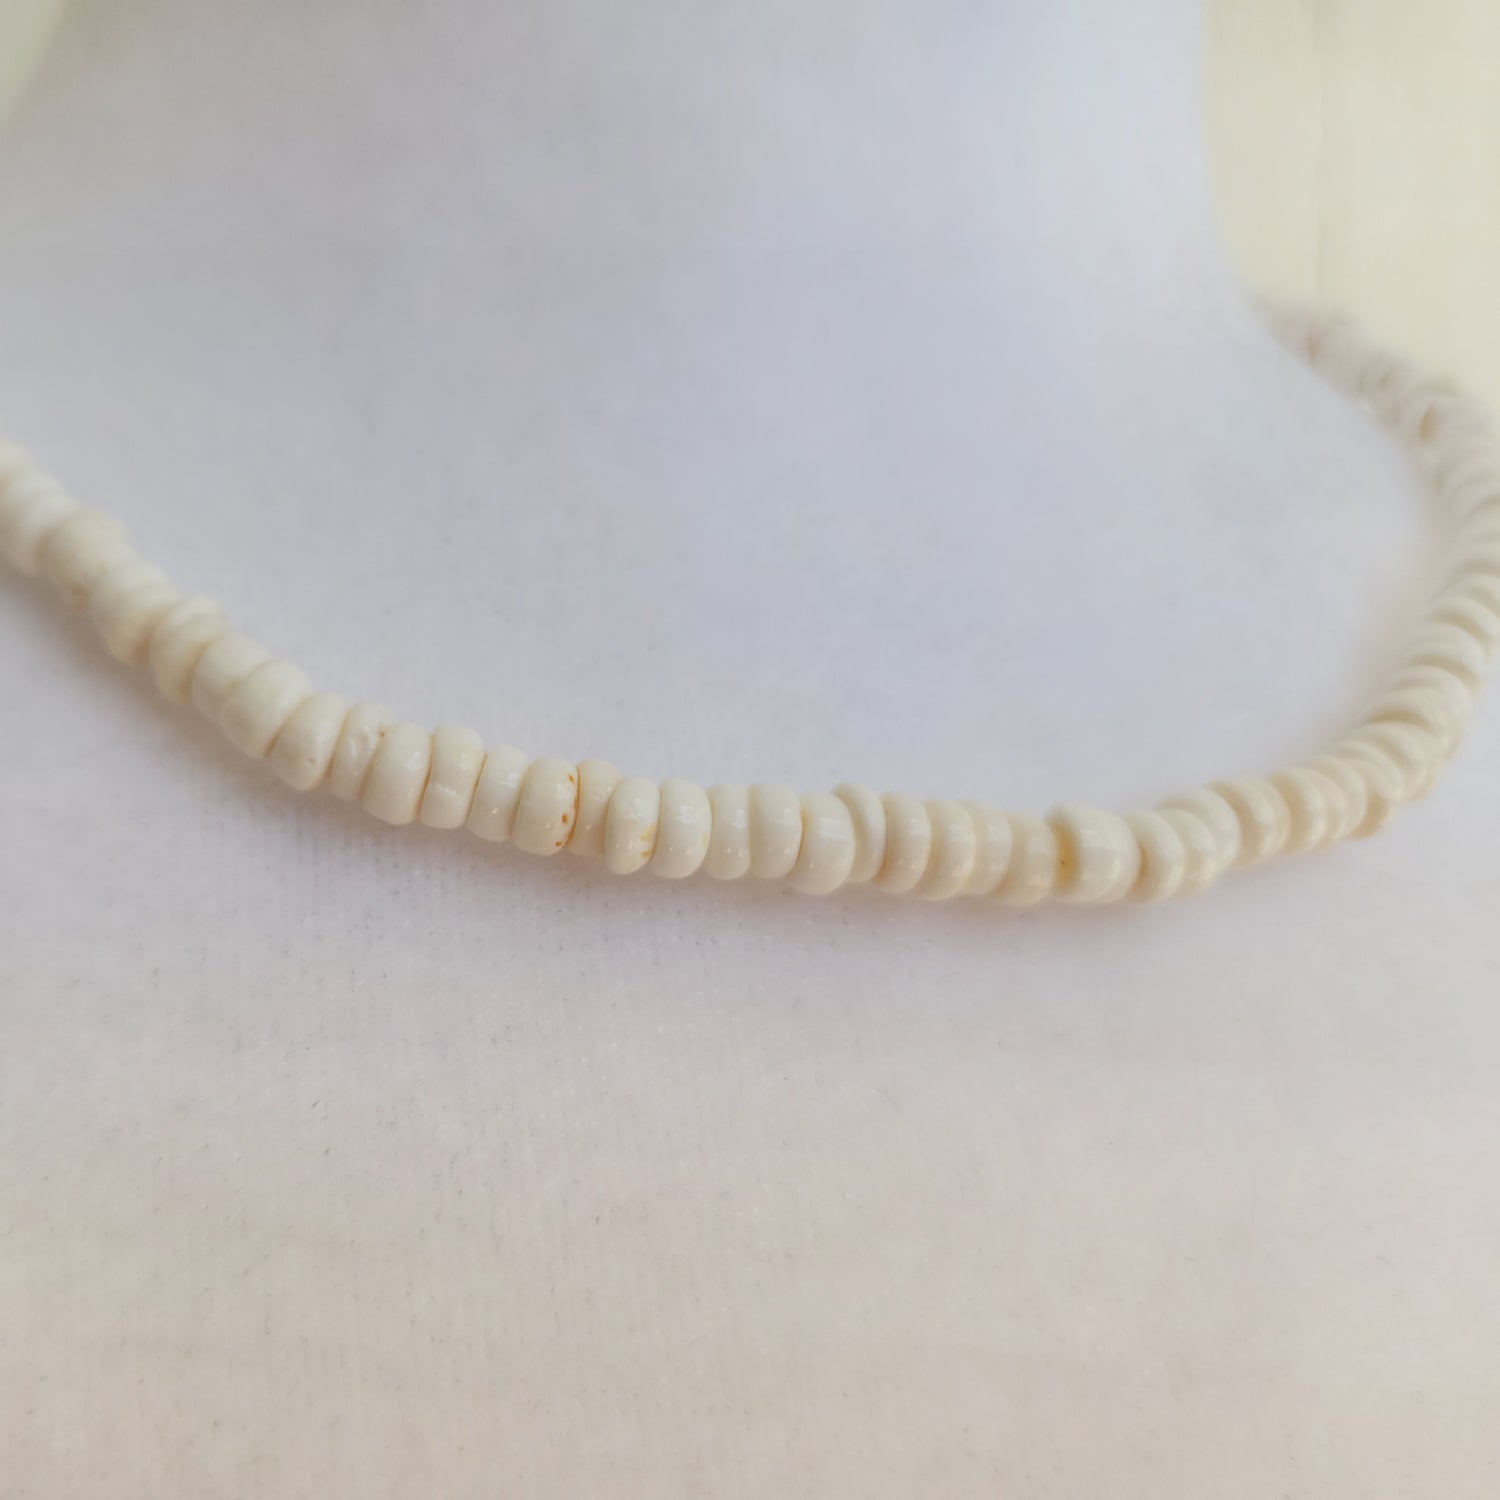 Buy Authentic Hawaiian Puka Shell Necklace or Bracelet. Puka Shell Beads,  Seashells, Shells, Beach Decor, Shell Beads, Tiny Shells. Online in India -  Etsy